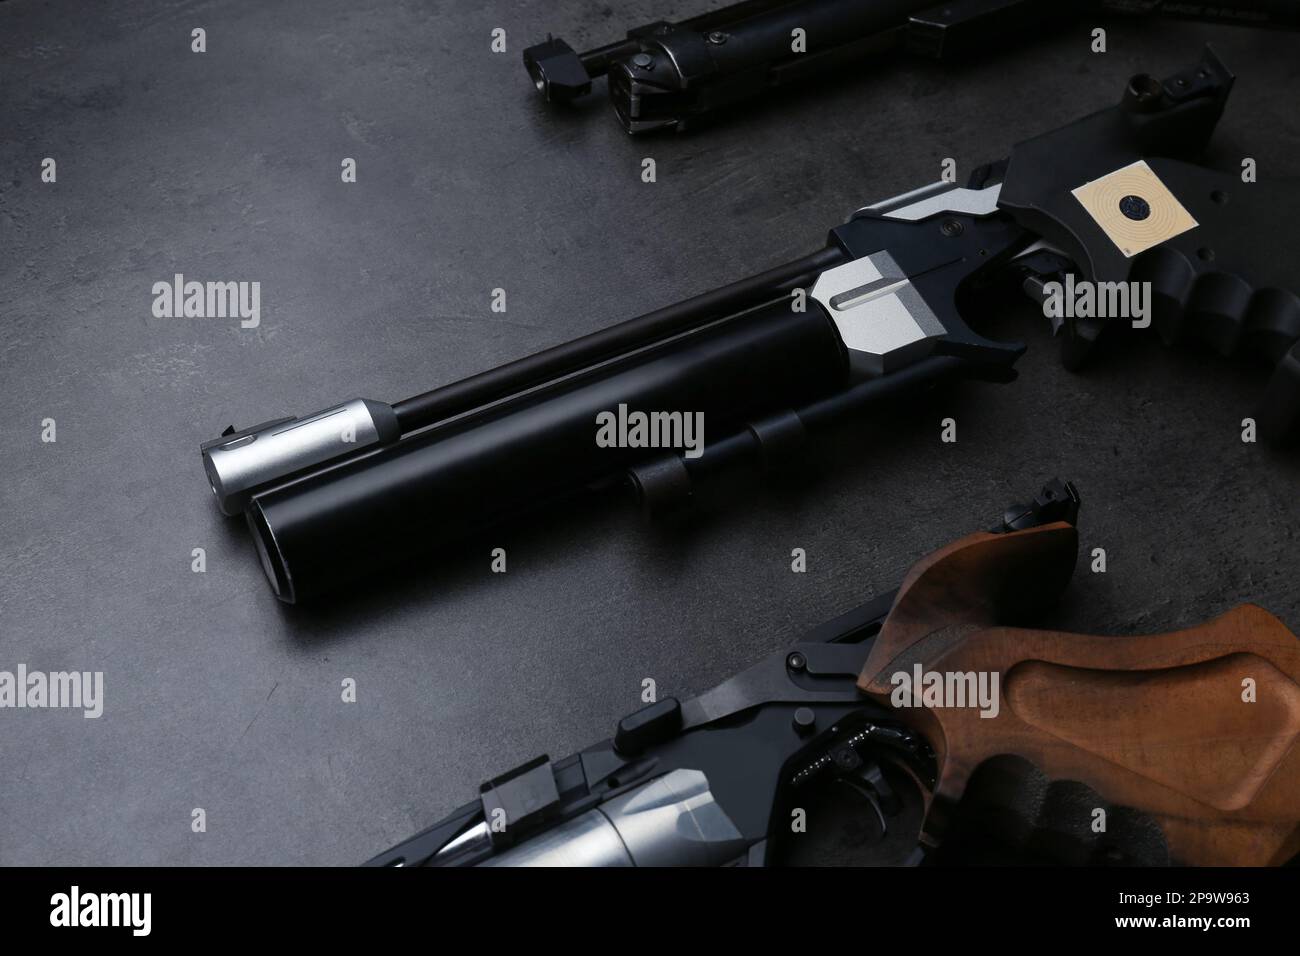 Différents pistolets de sport sur table noire. Pistolets professionnels Banque D'Images